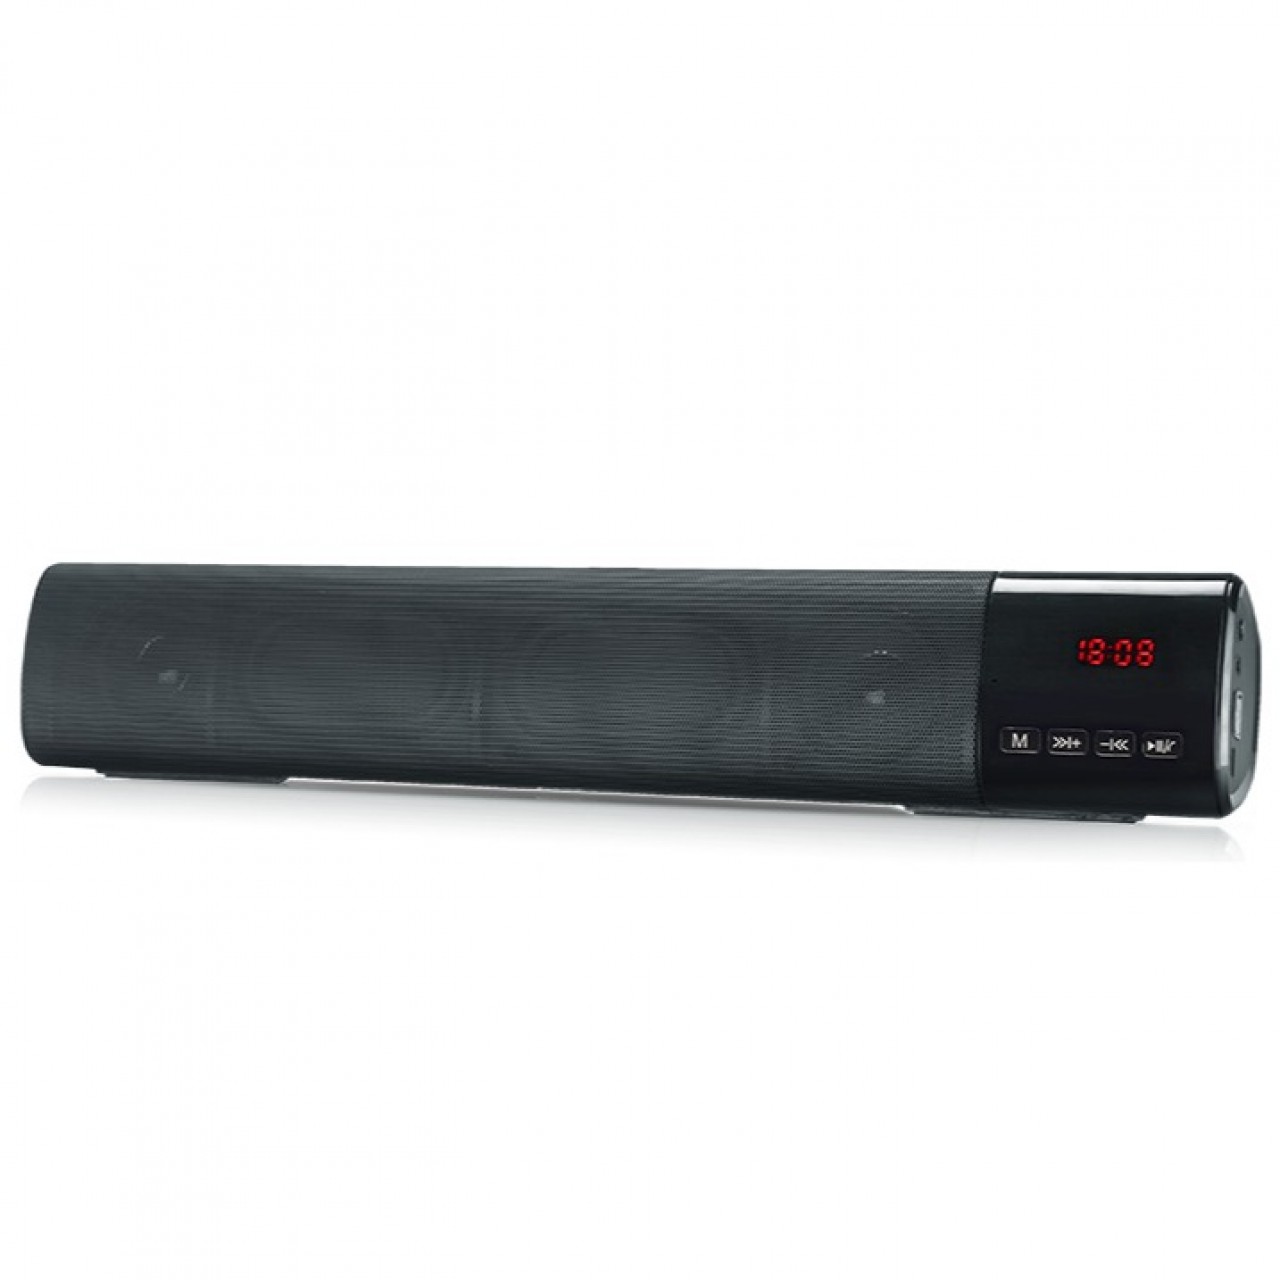 Kisonli LED-800 Portable Bluetooth Speaker